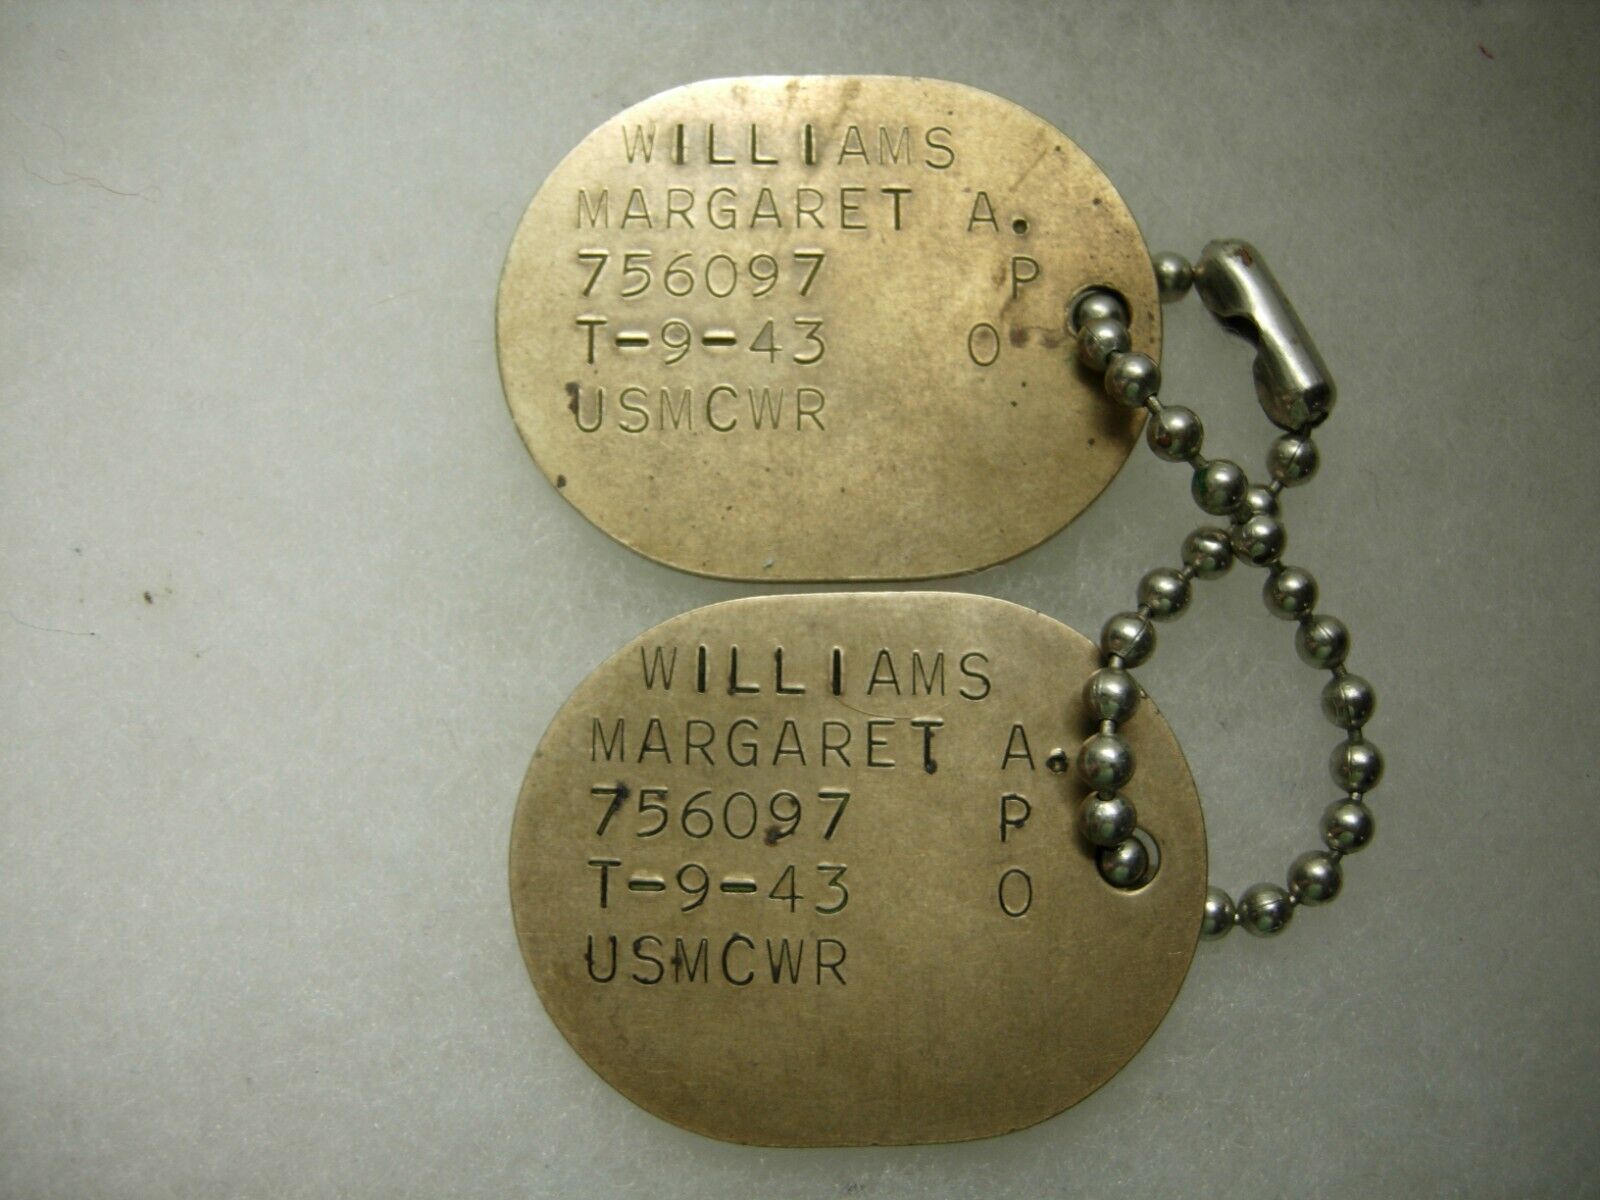 WW2 USMCWR Dog Tag Pair - Female Marine T-43 Margaret Williams 756097  XB